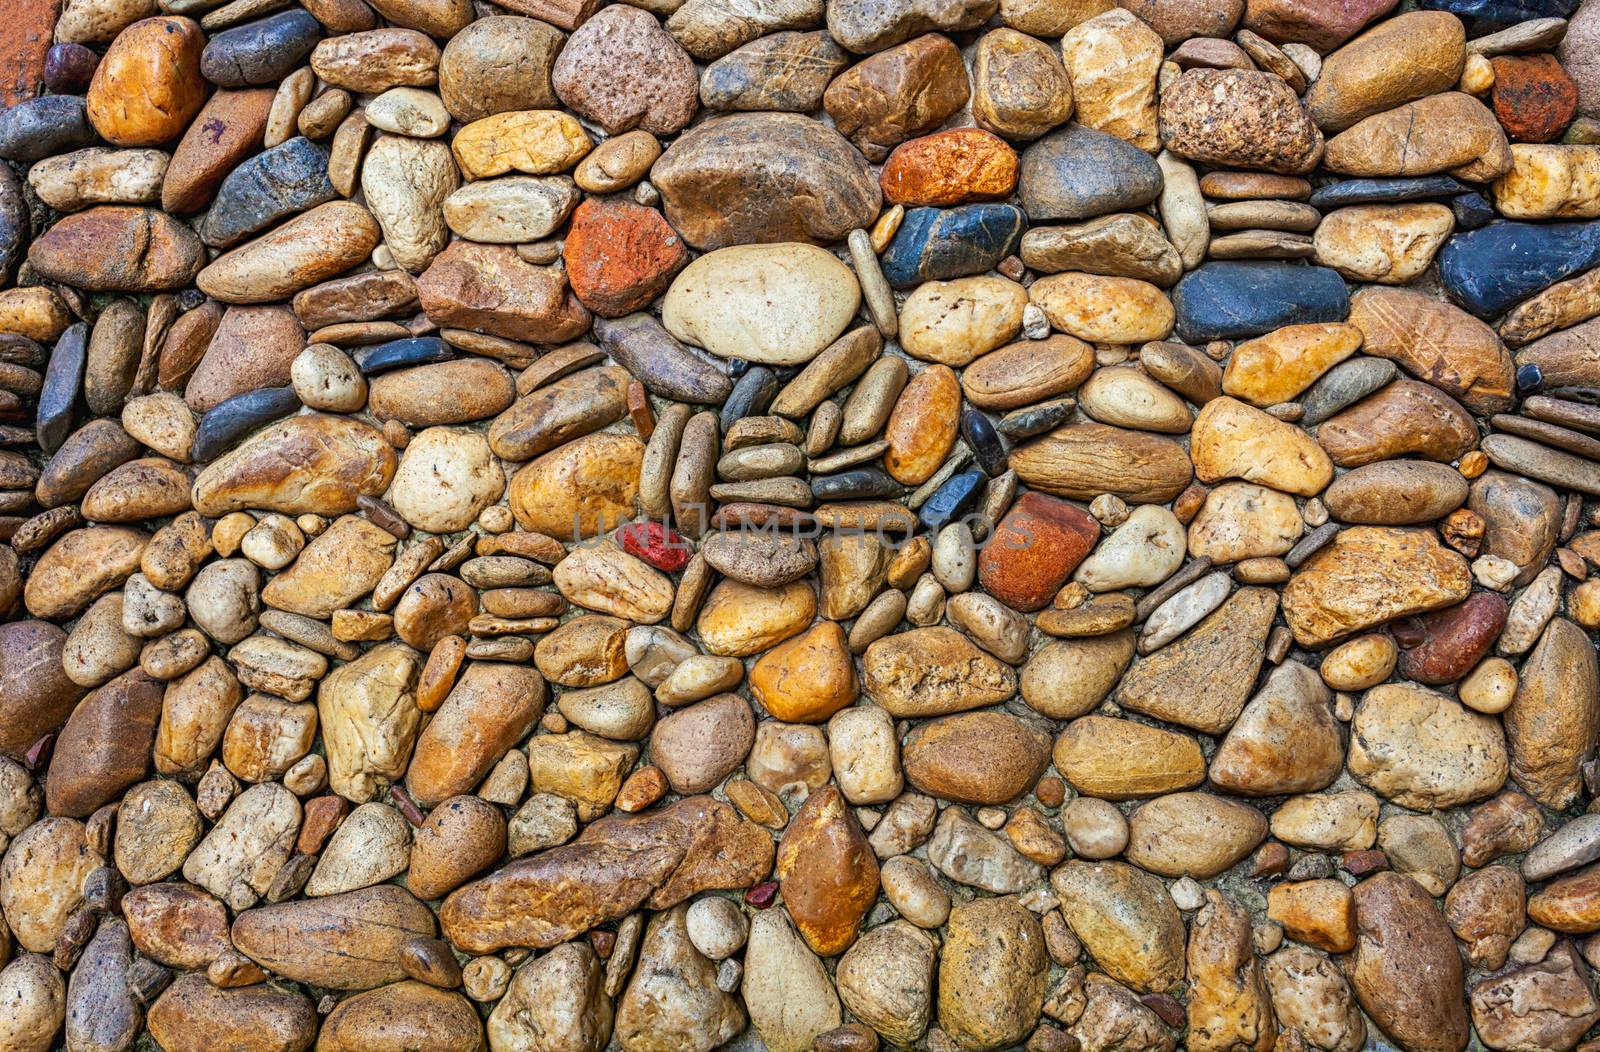 Sea stones pebble texture background .